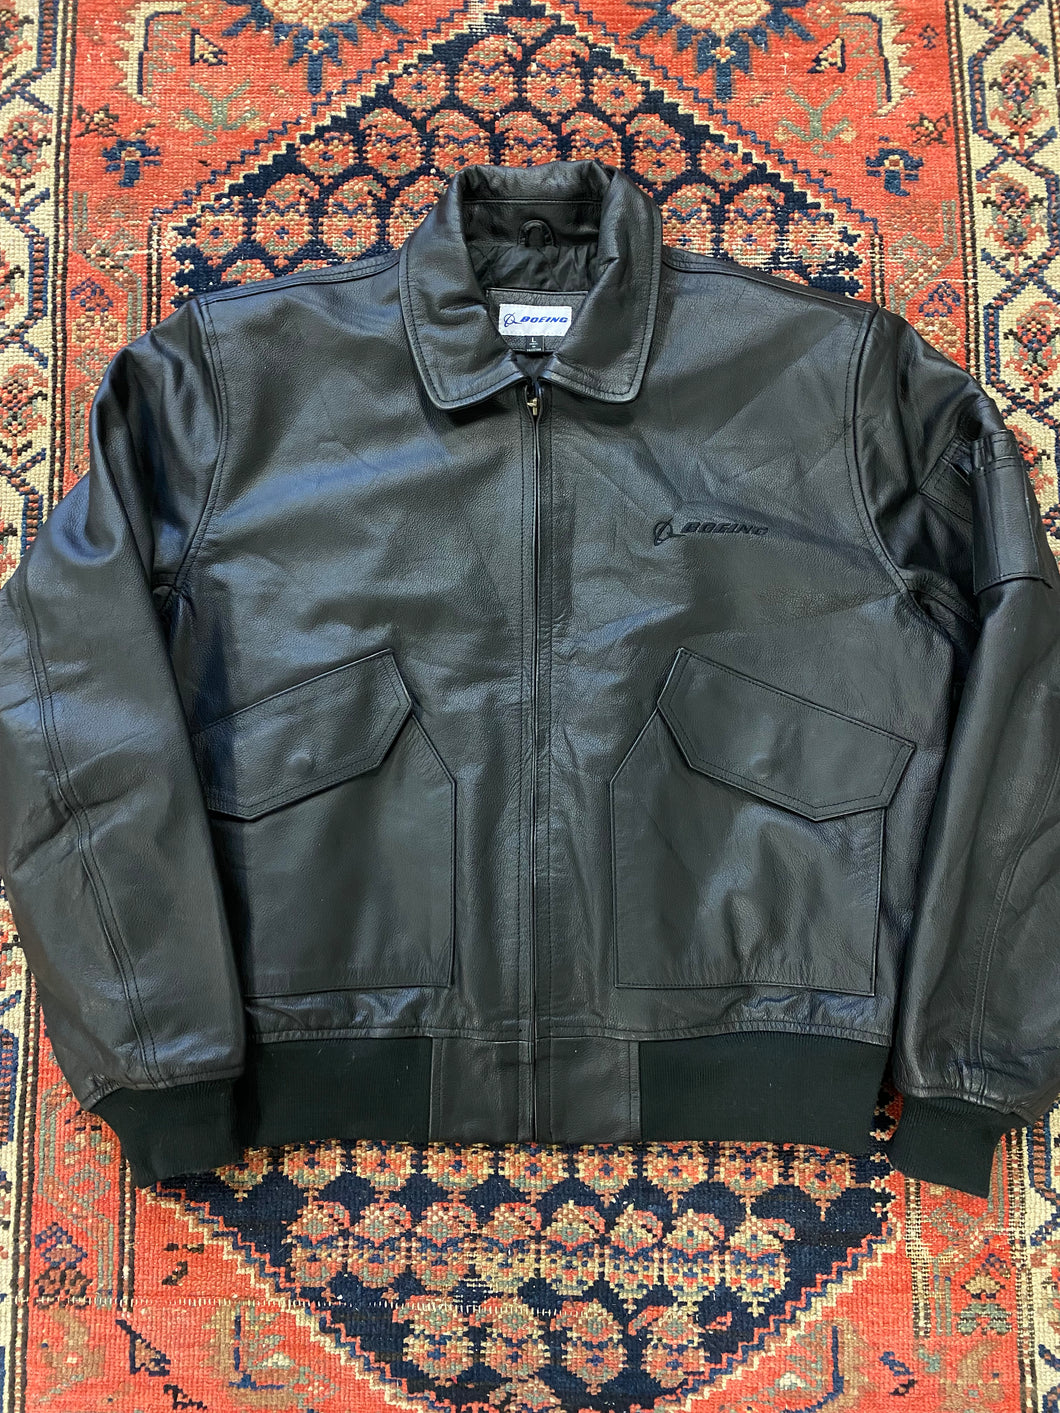 Vintage Boeing Bomber Leather Jacket - L